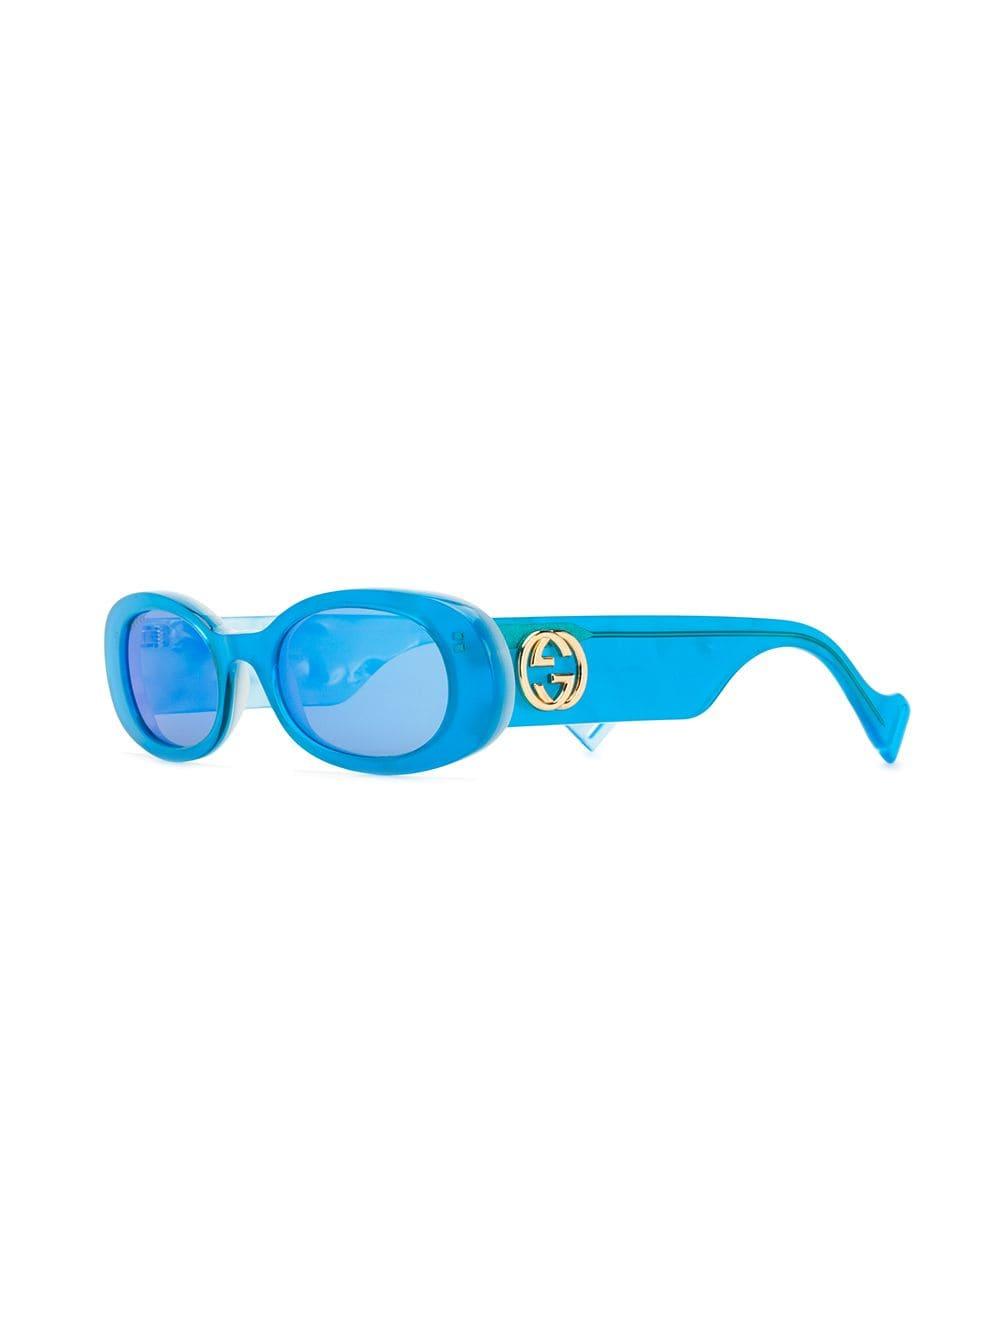 Gucci Blue Browline Men's Sunglasses GG1460S 004 56 GG1460S 004 56 | eBay